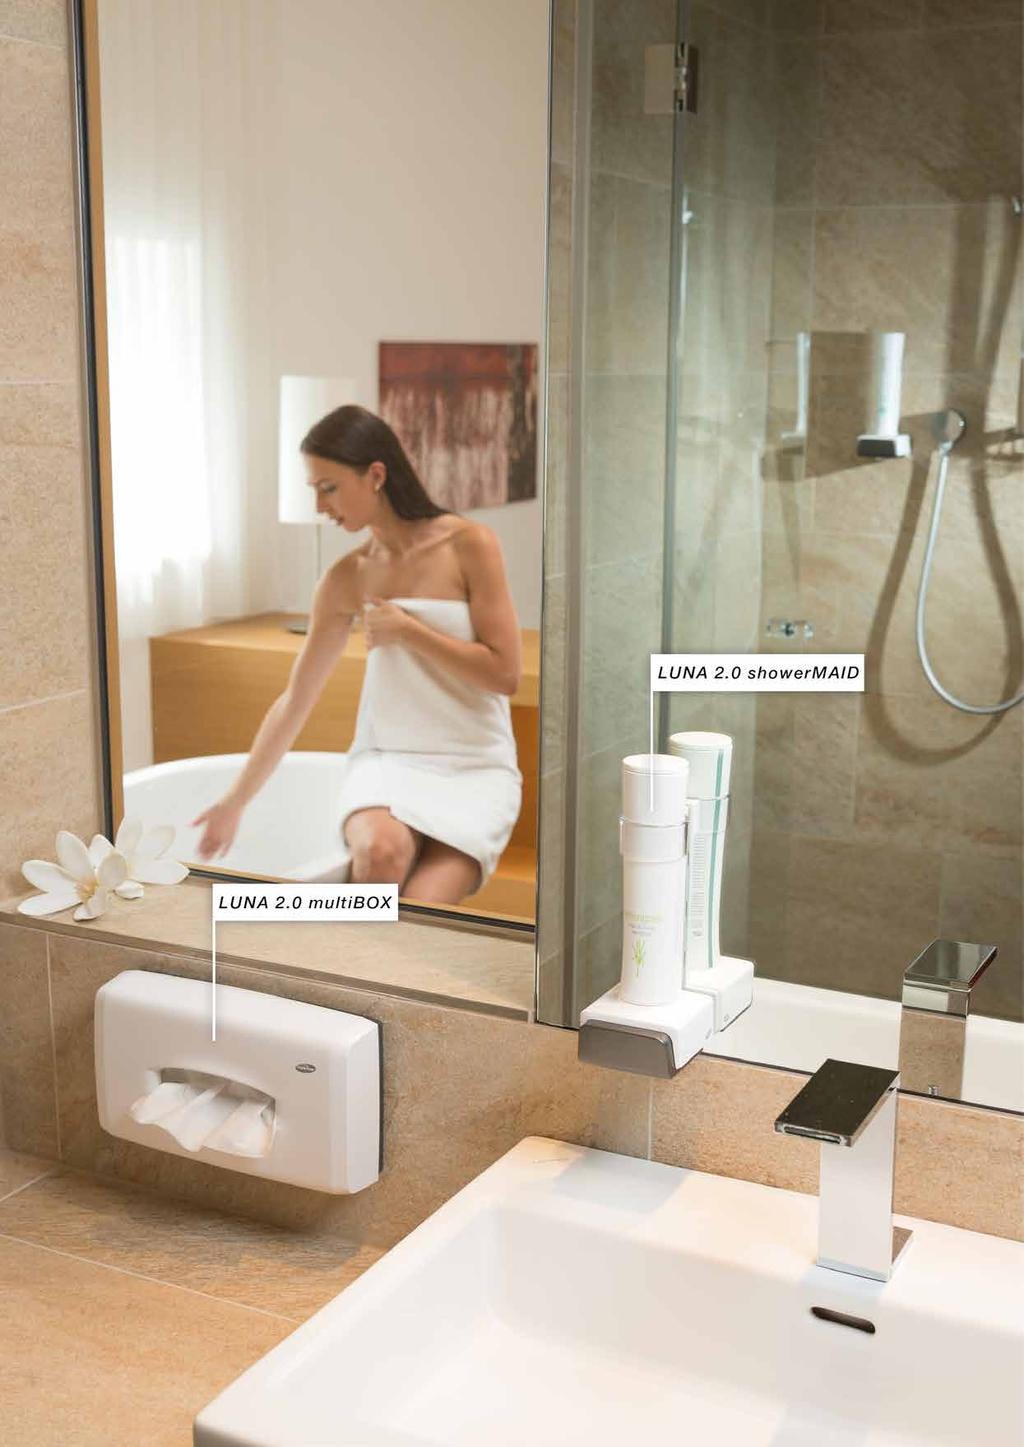 LUNA 2.0 Für jedes Hotelzimmer. waschraumhygiene Die Qualität entscheidet, ob sich der Gast wohlfühlt. Das gilt besonders fürs Hotelzimmer.